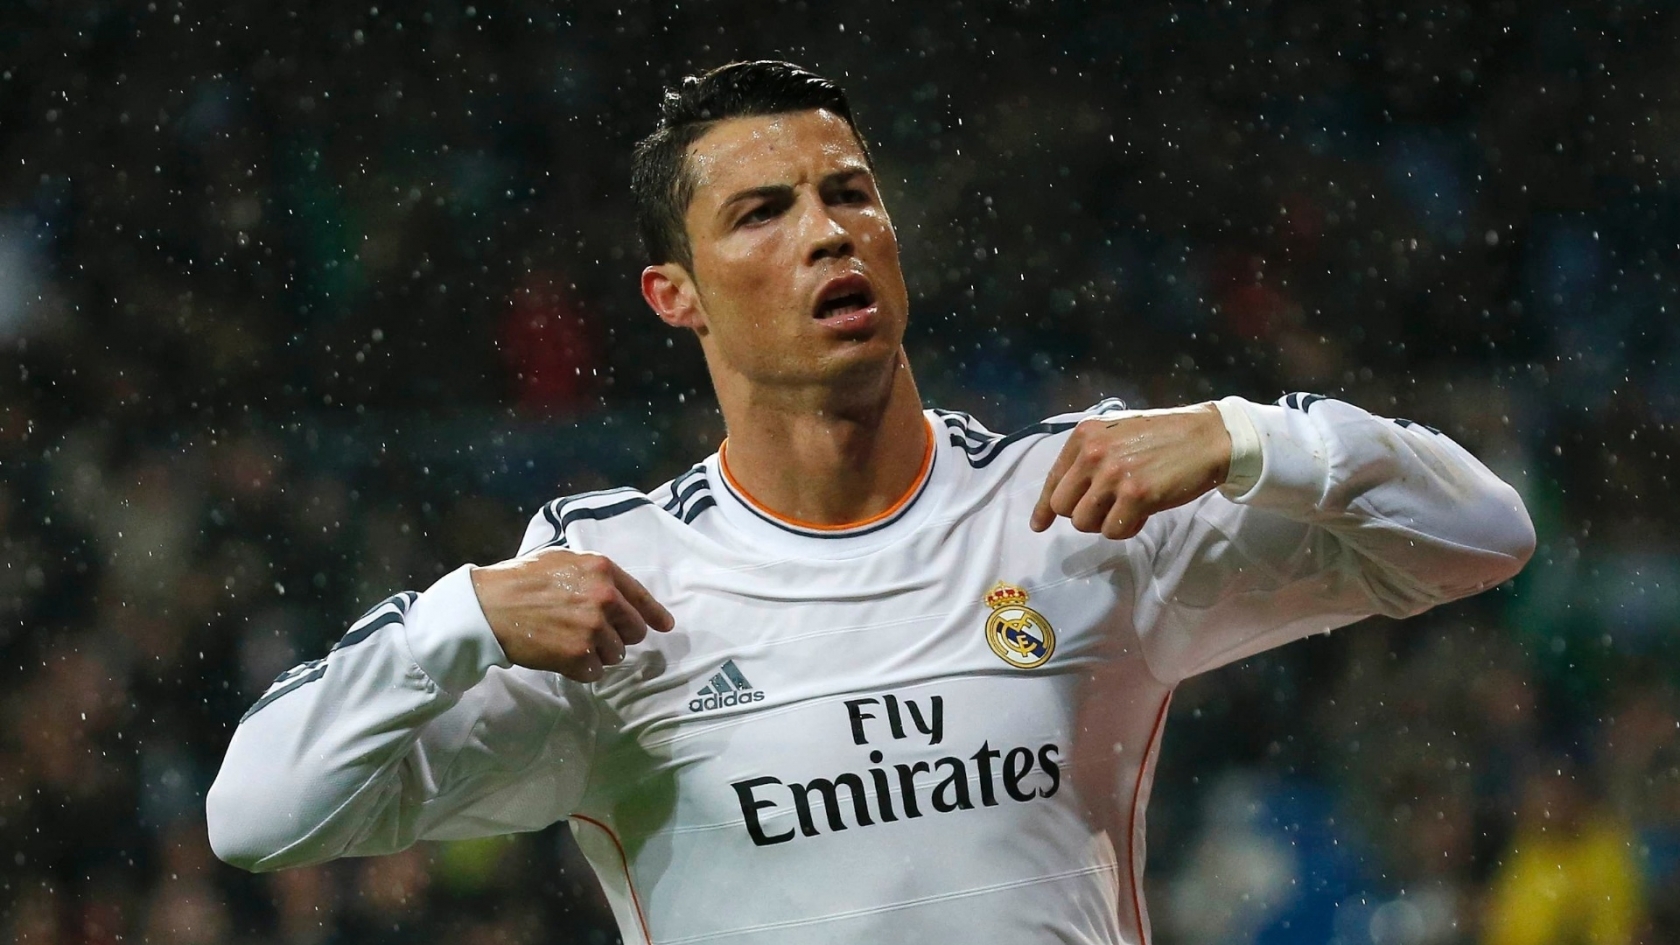 Cristiano Ronaldo in Rain for 1680 x 945 HDTV resolution